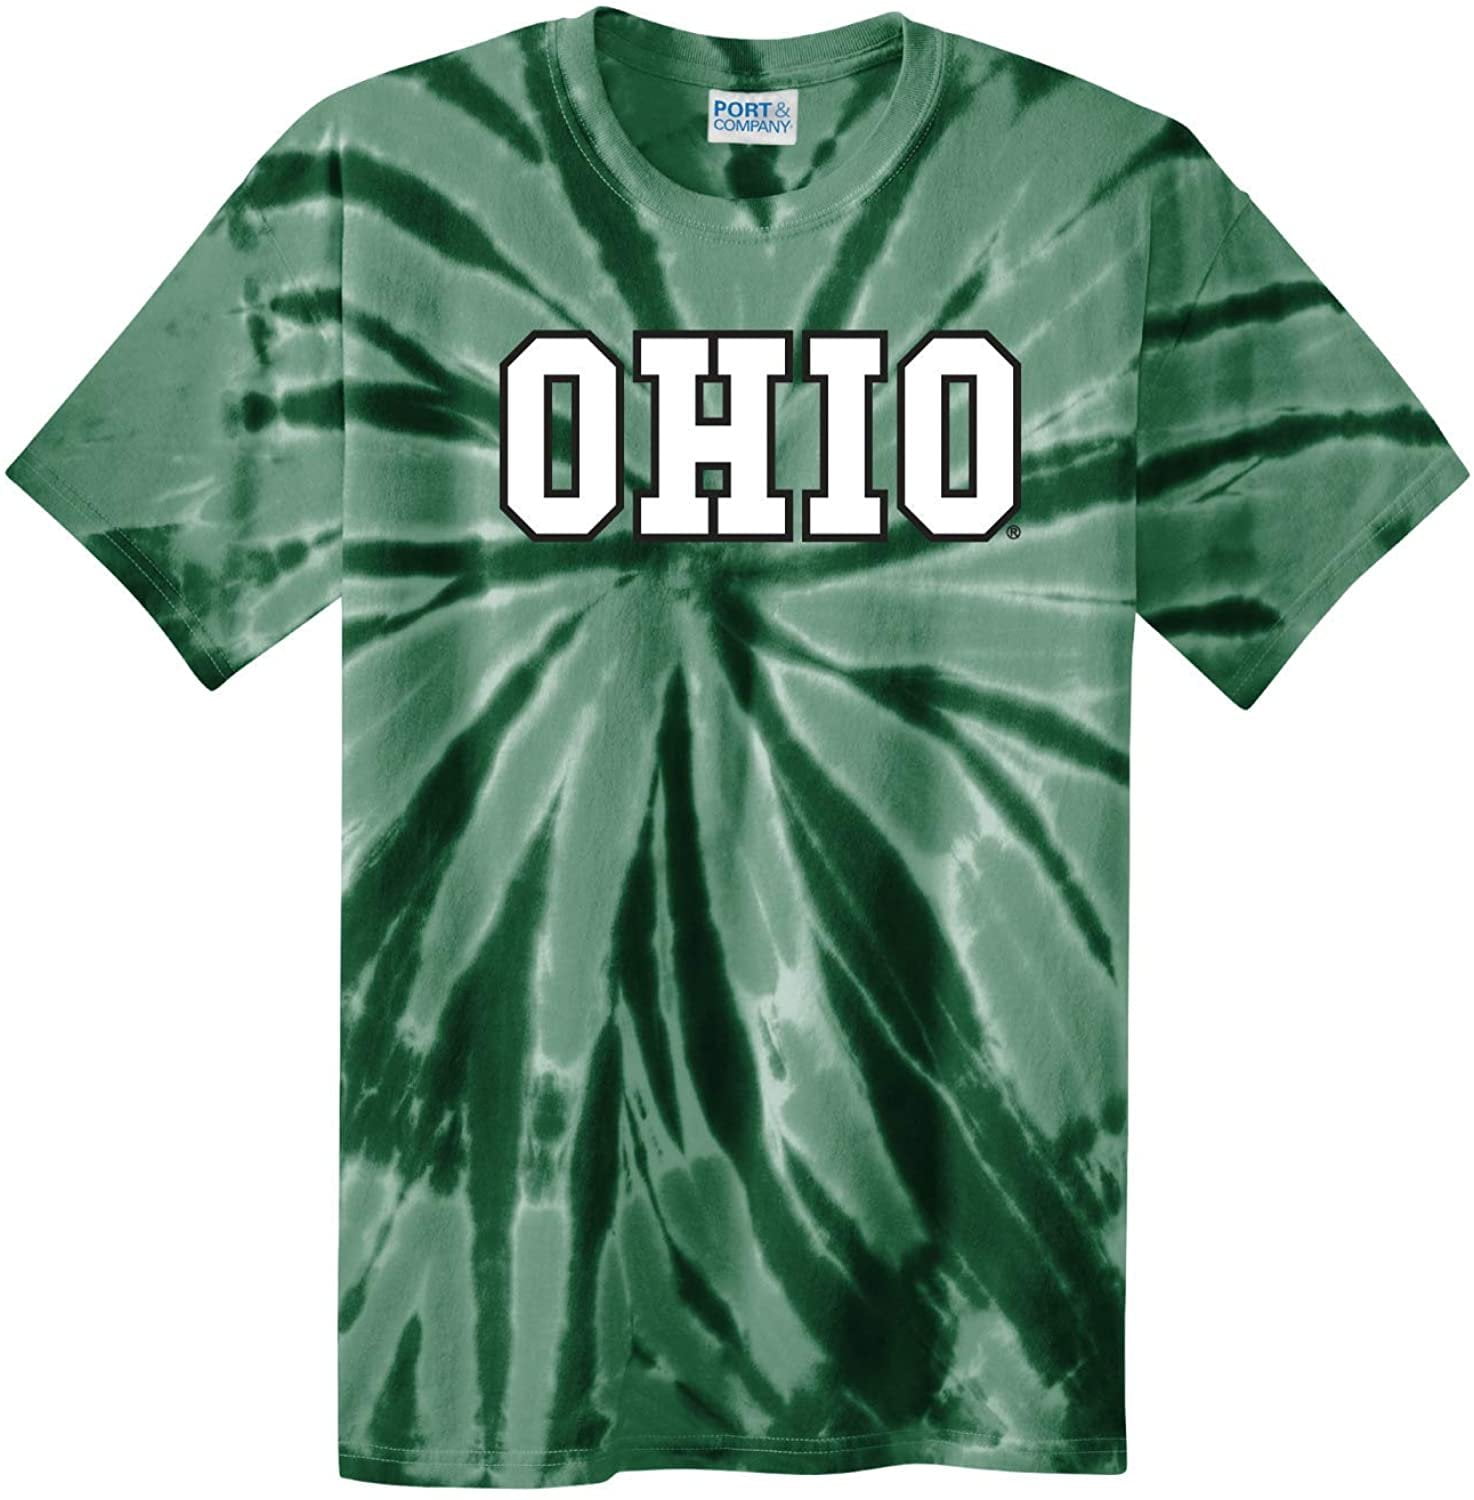 ohio university shirts